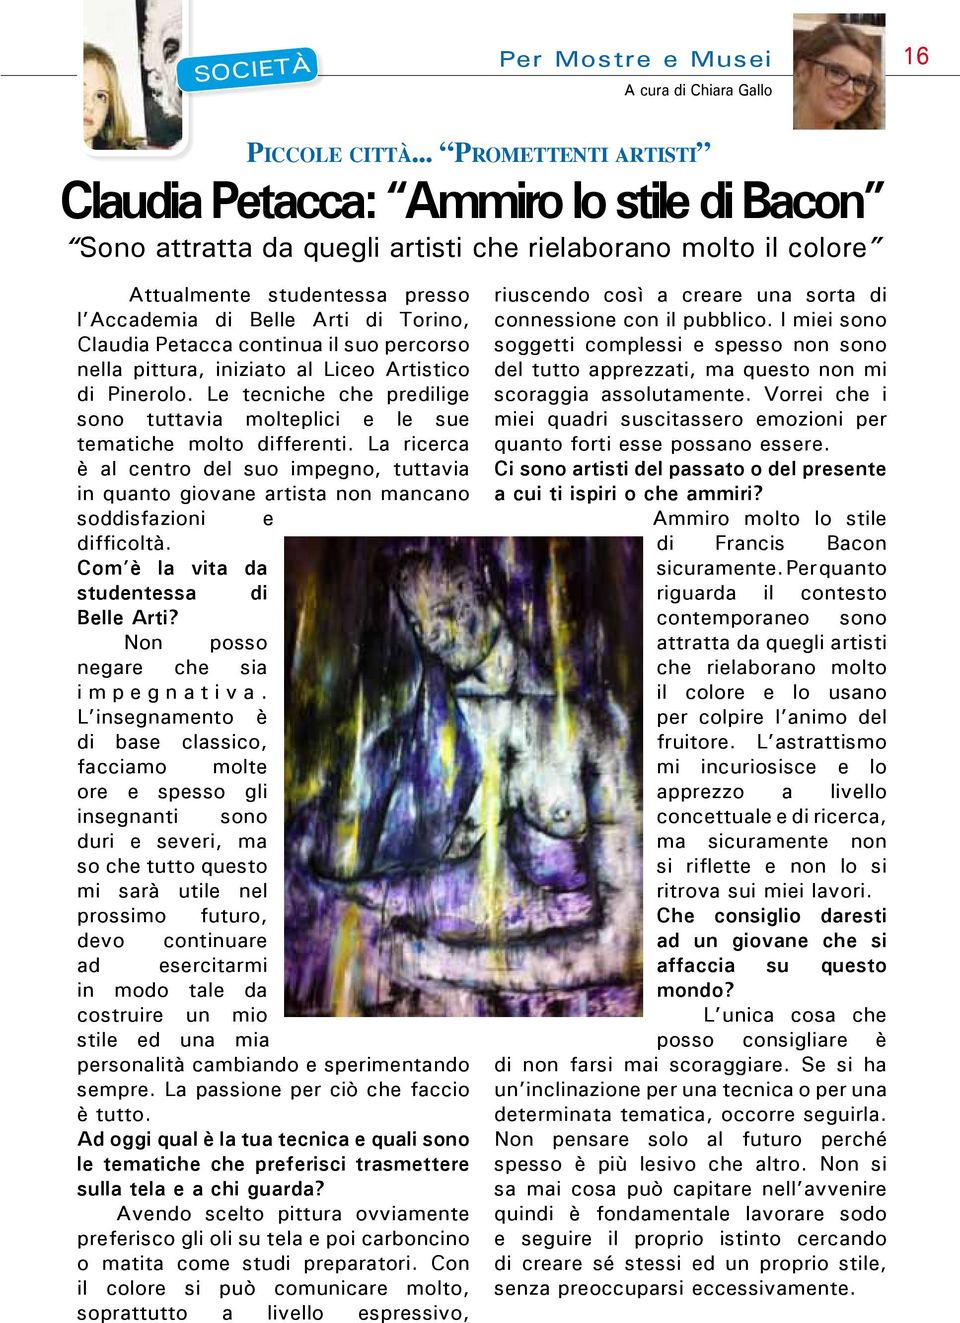 Claudia Petacca continua il suo percorso nella pittura, iniziato al Liceo Artistico di Pinerolo. Le tecniche che predilige sono tuttavia molteplici e le sue tematiche molto differenti.